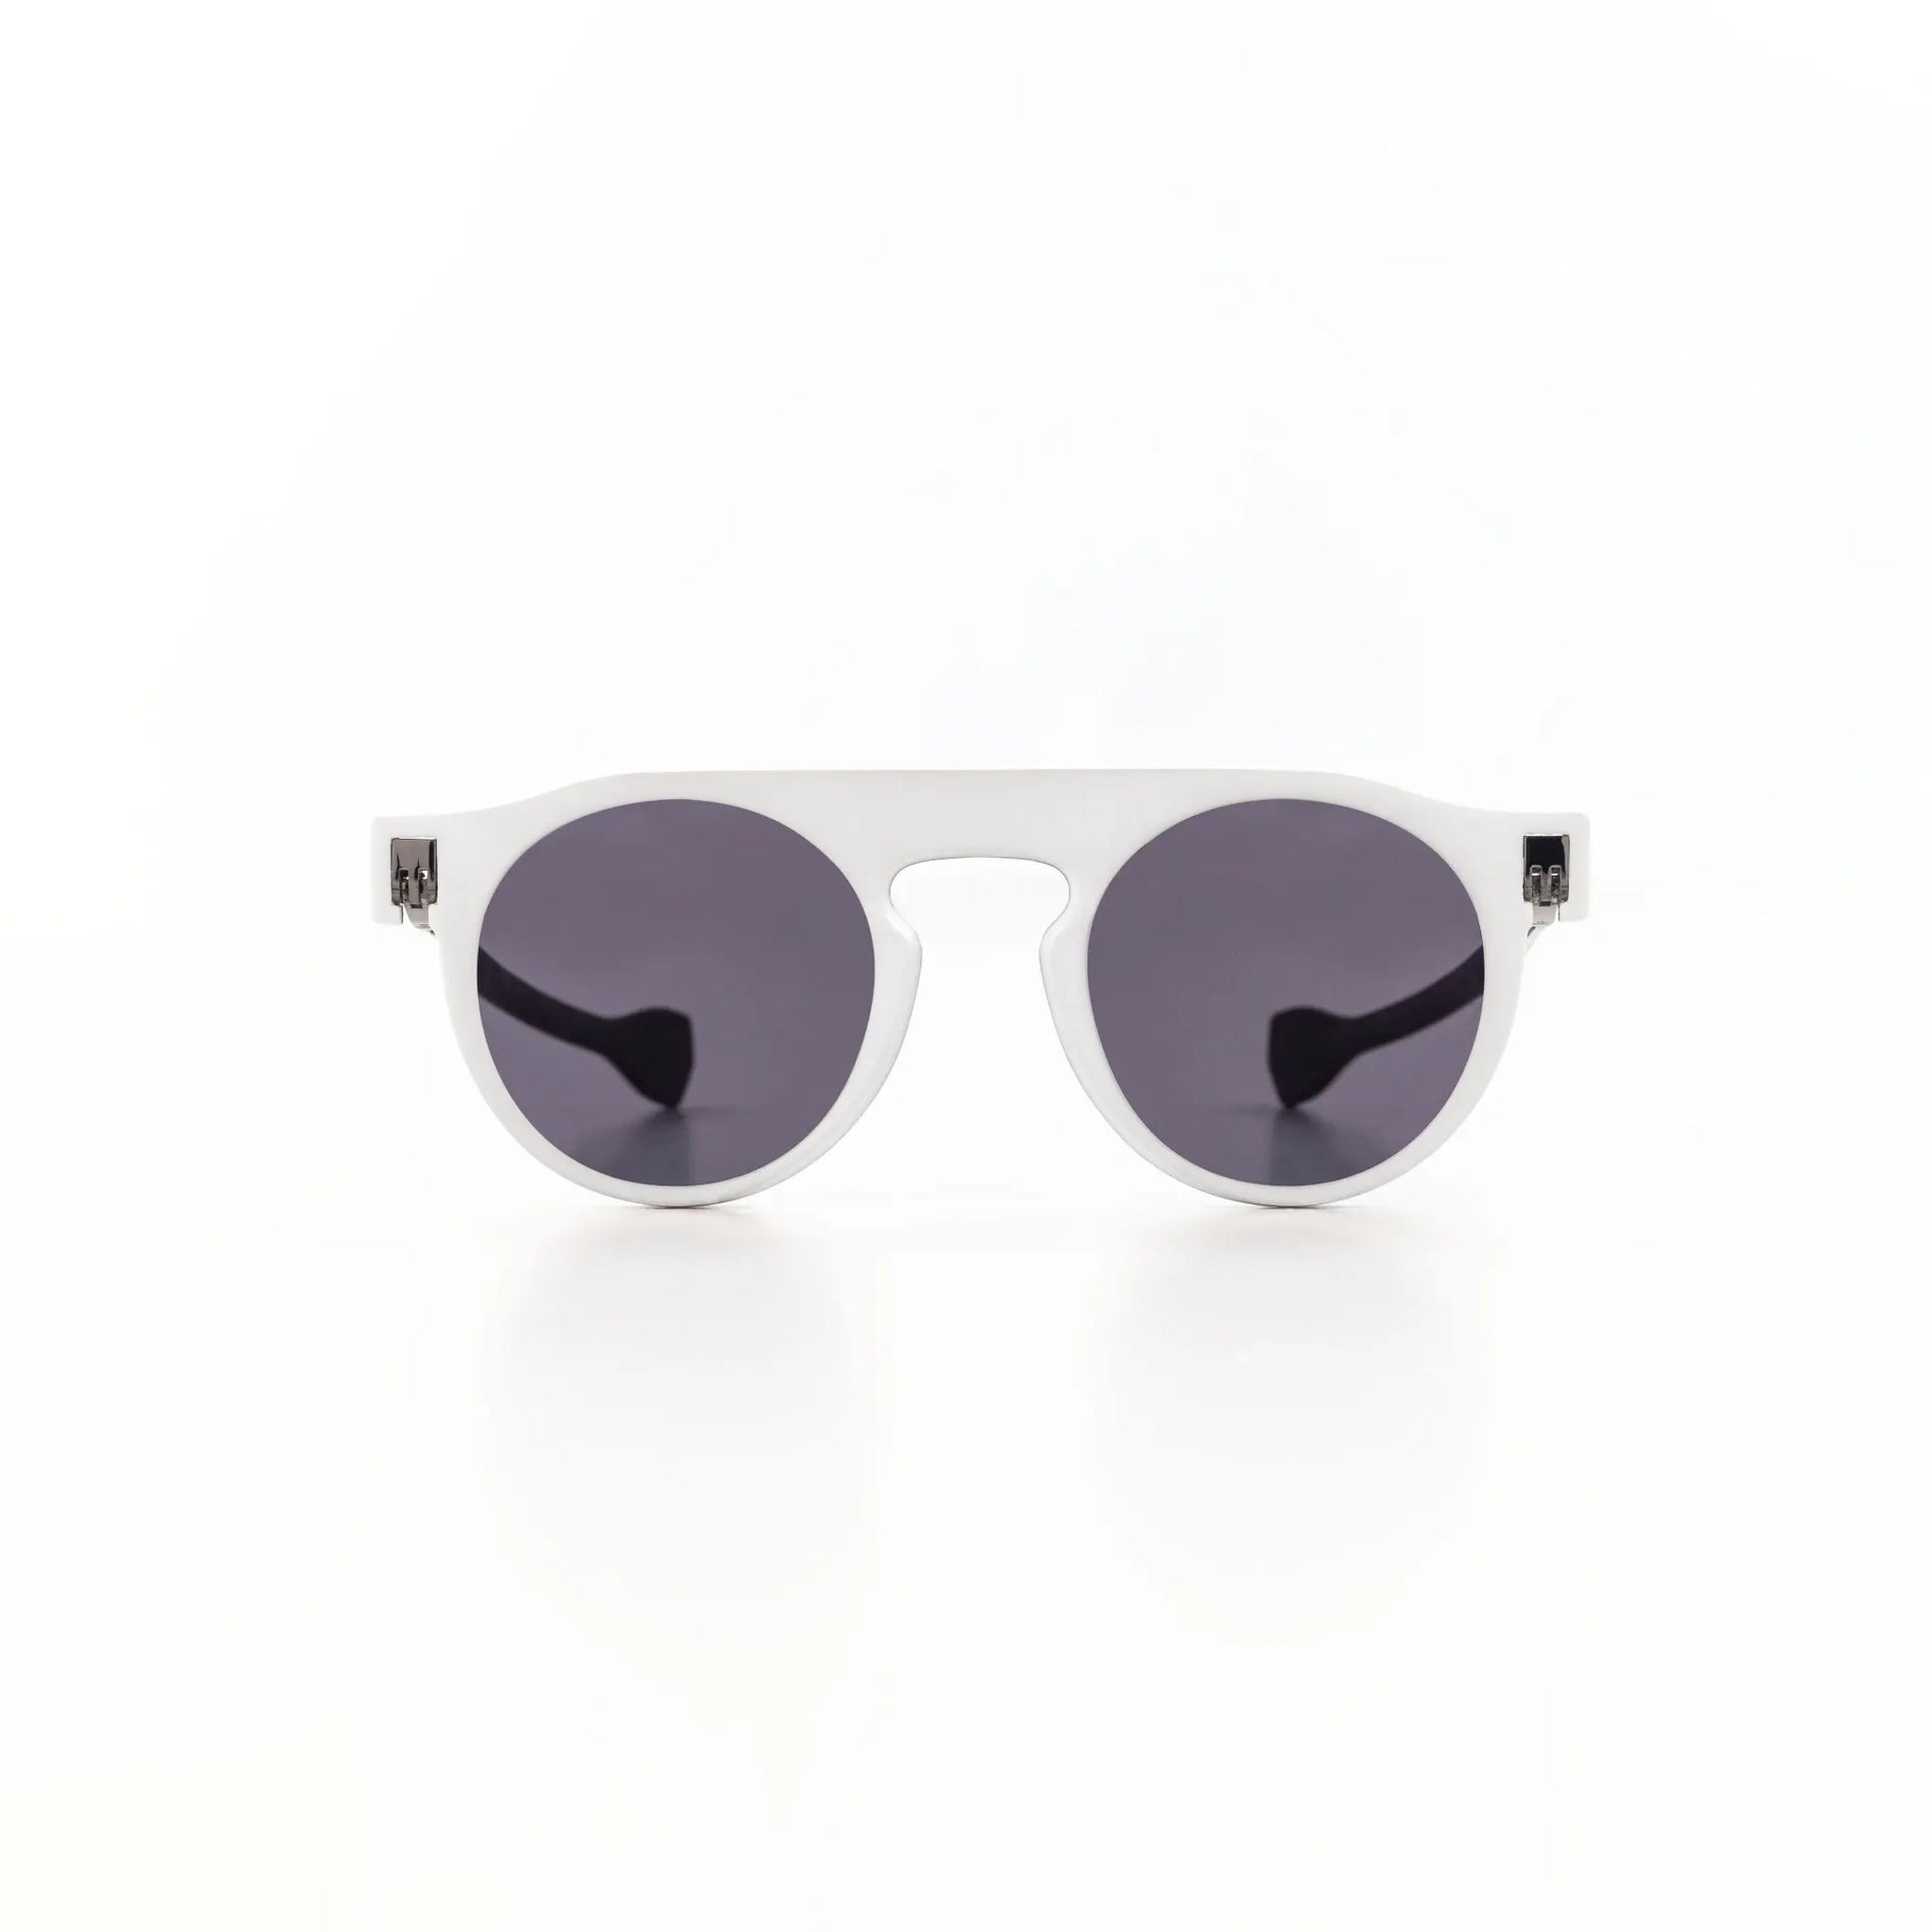 Reverso sunglasses black & white reversible & ultra light front view 1